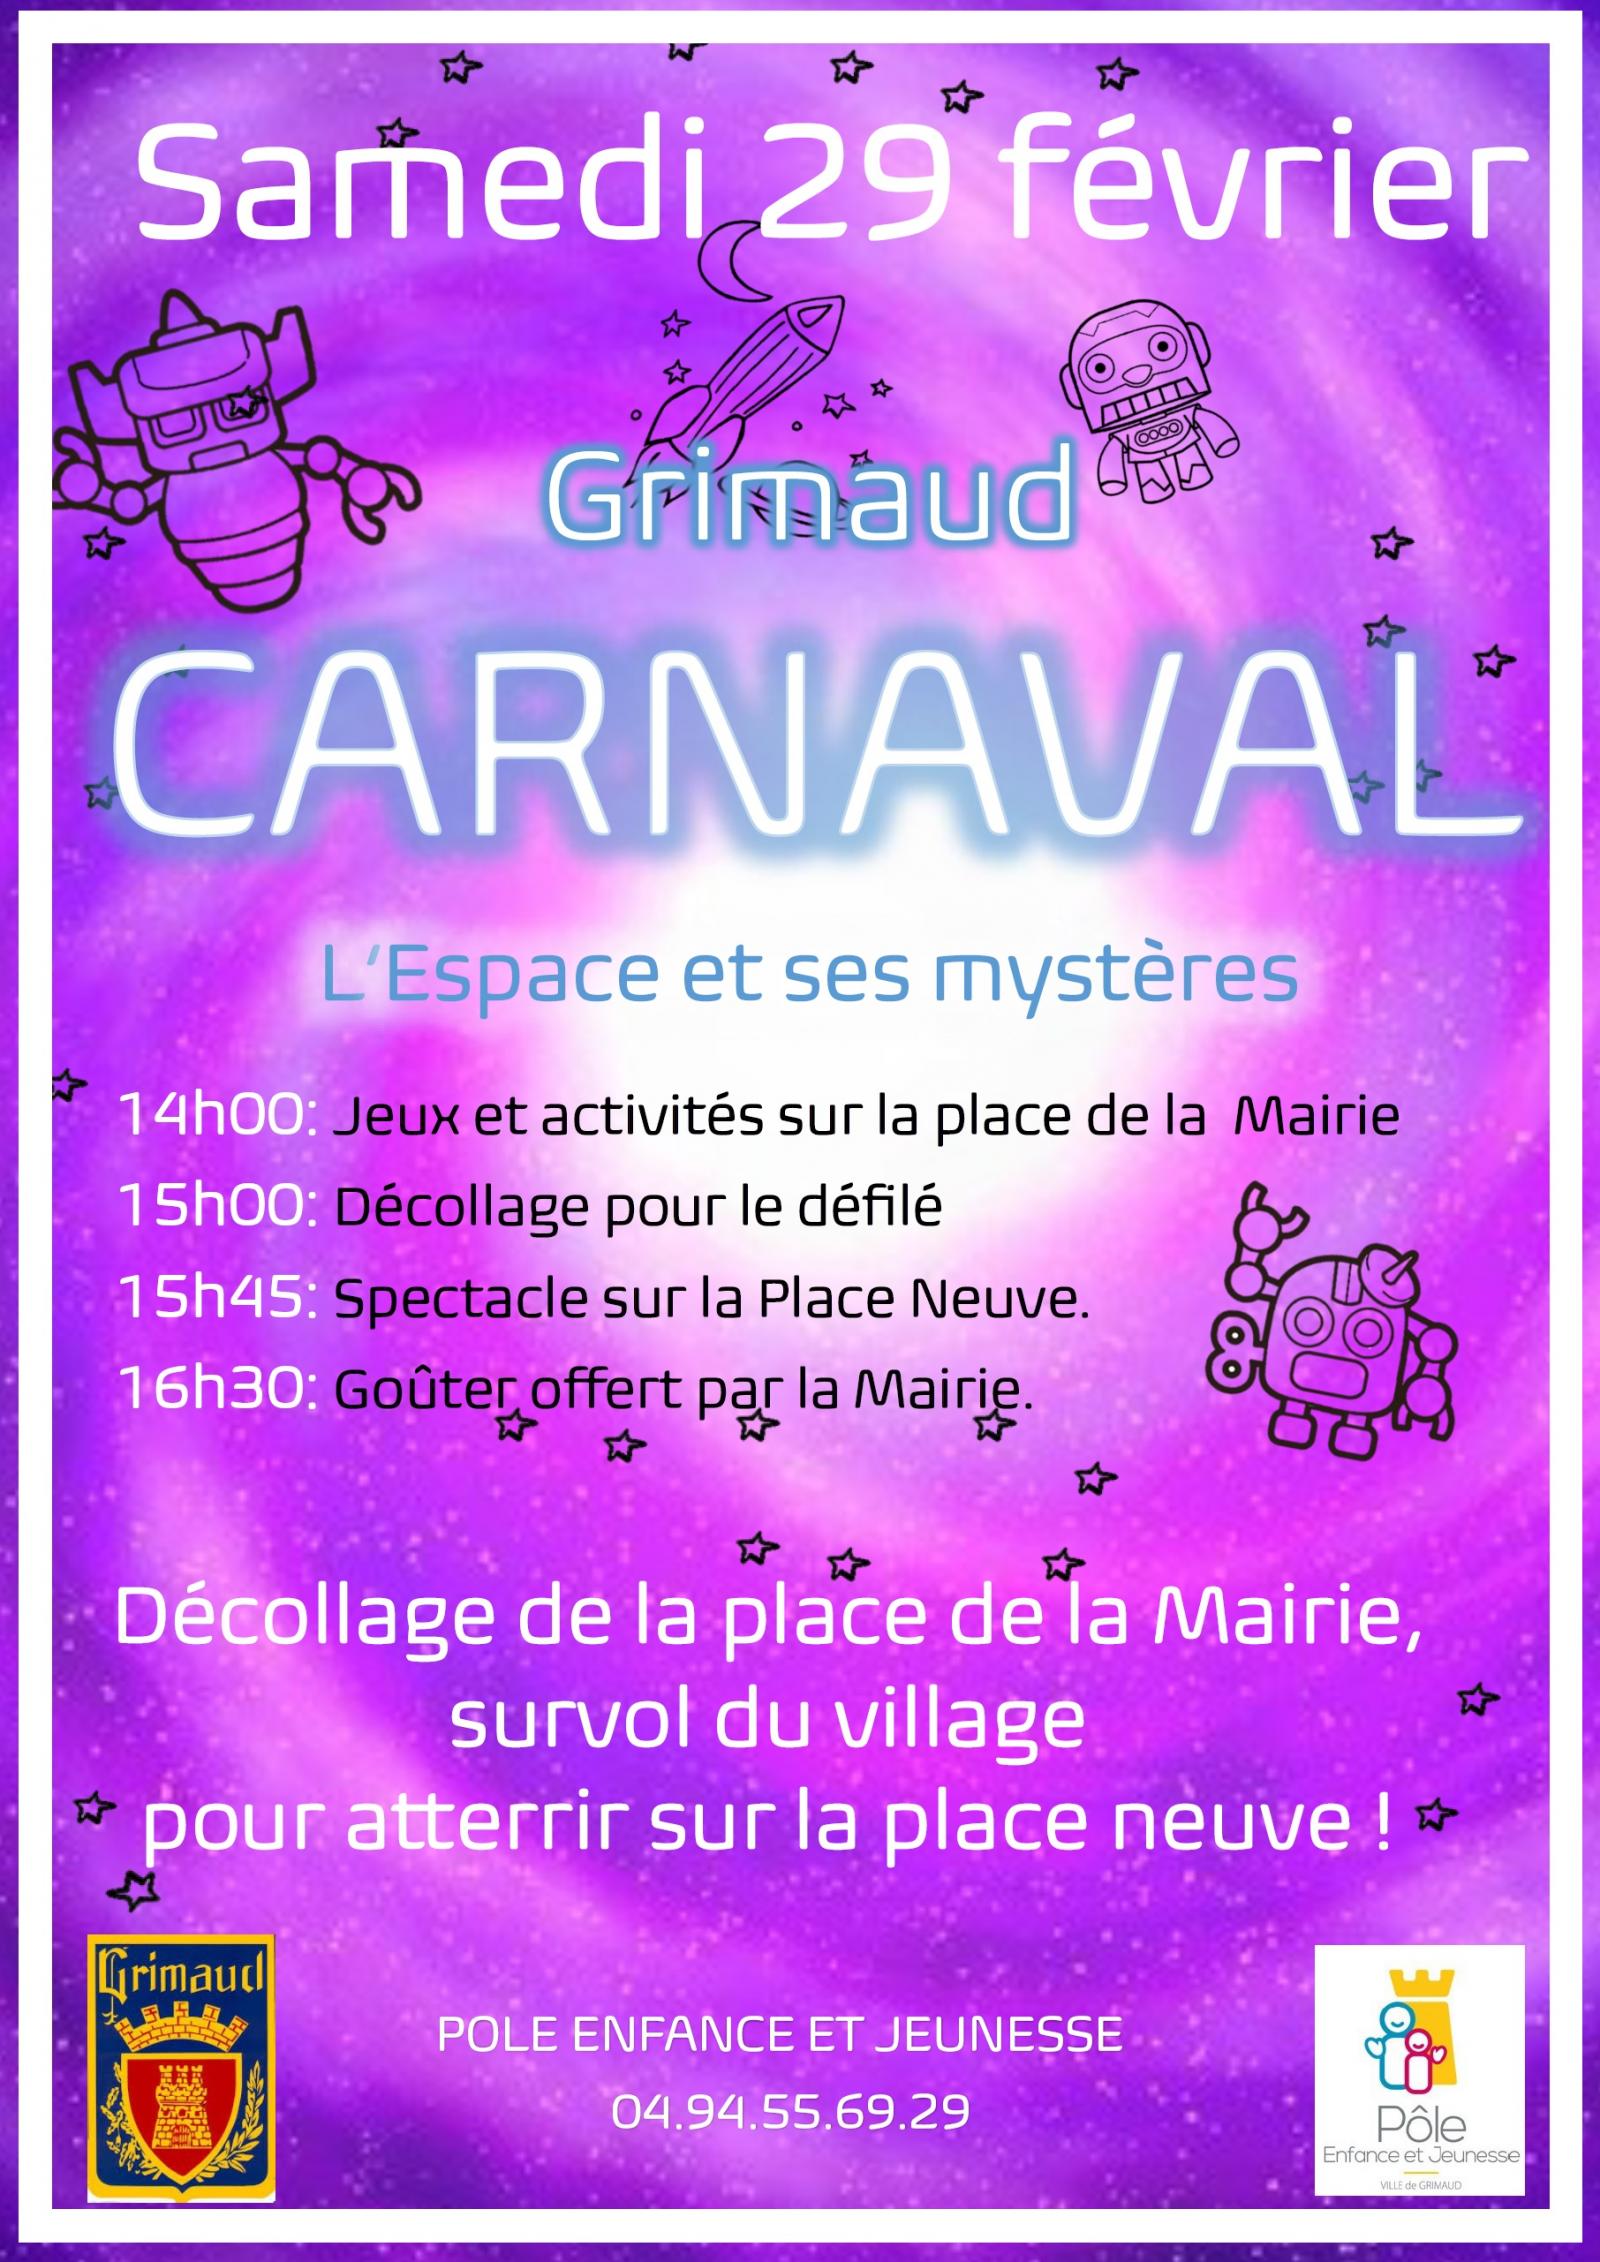 Saturday February 29, 2020: Children's Carnival